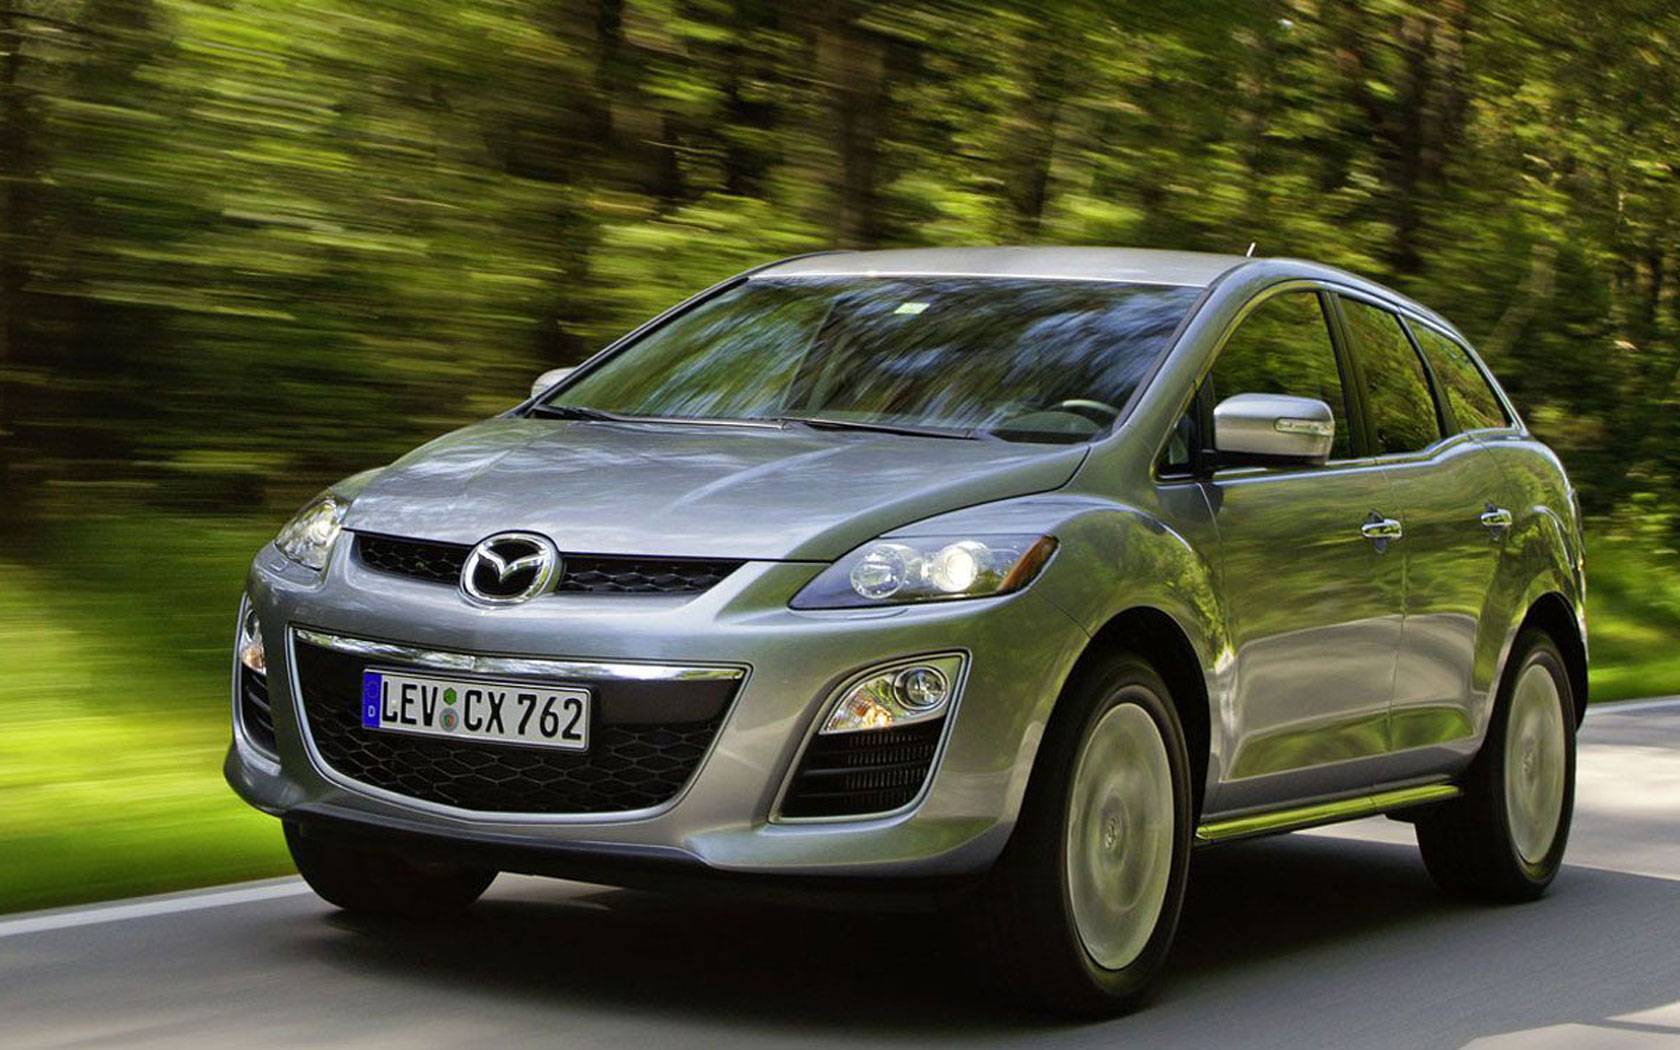 Японский унисекс: проблемы подержанной Mazda CX-7